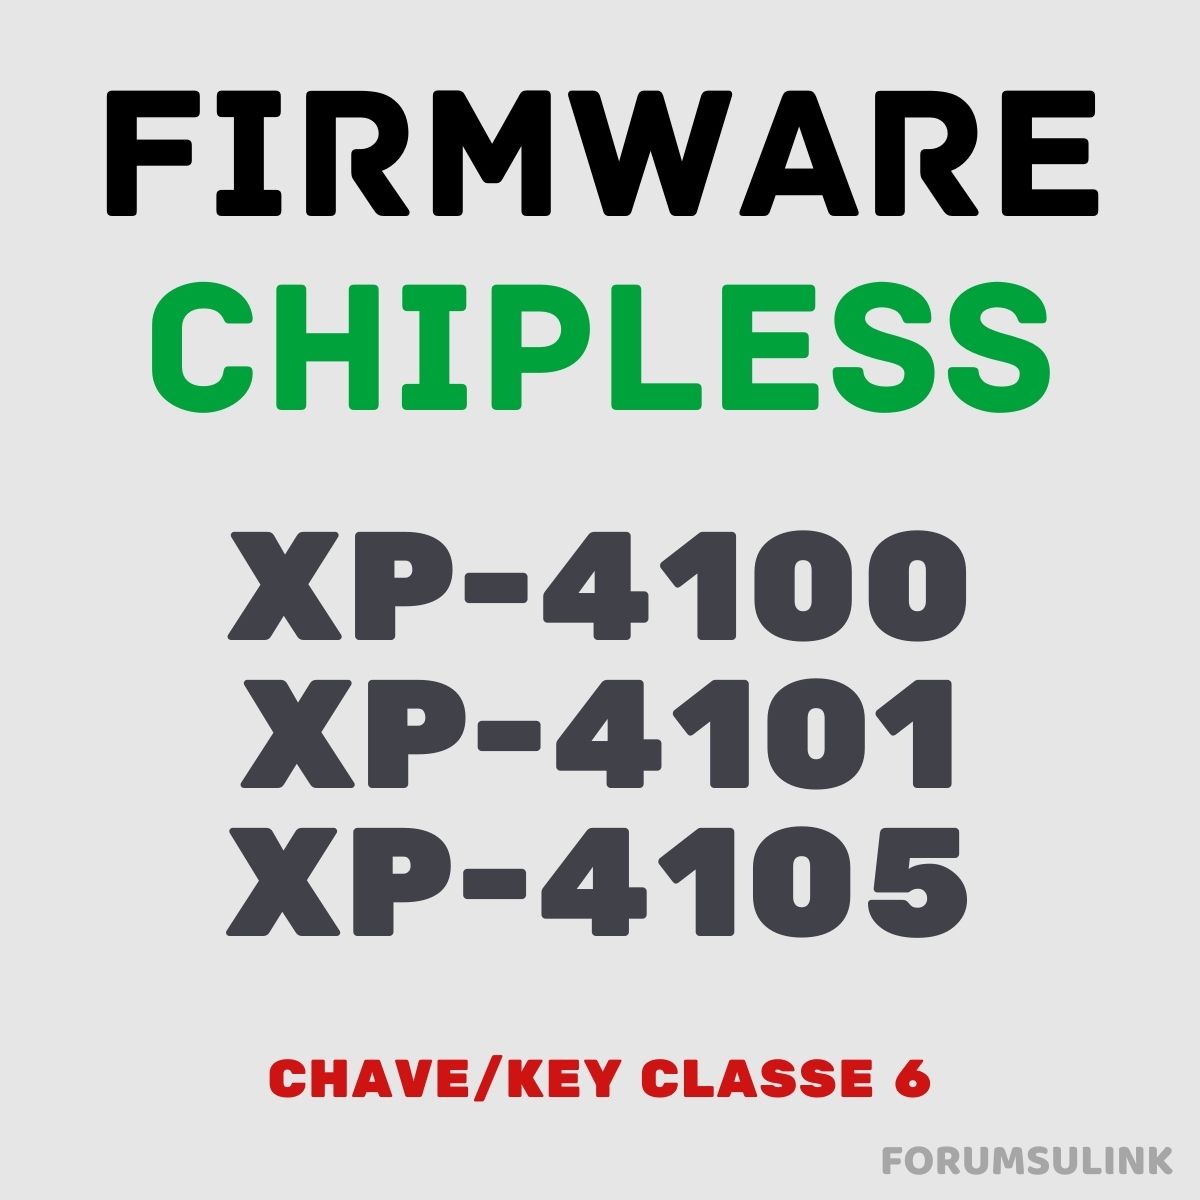 Epson XP-4100, XP-4101 e XP-4105 | Arquivo de Software Firmware ChipLess